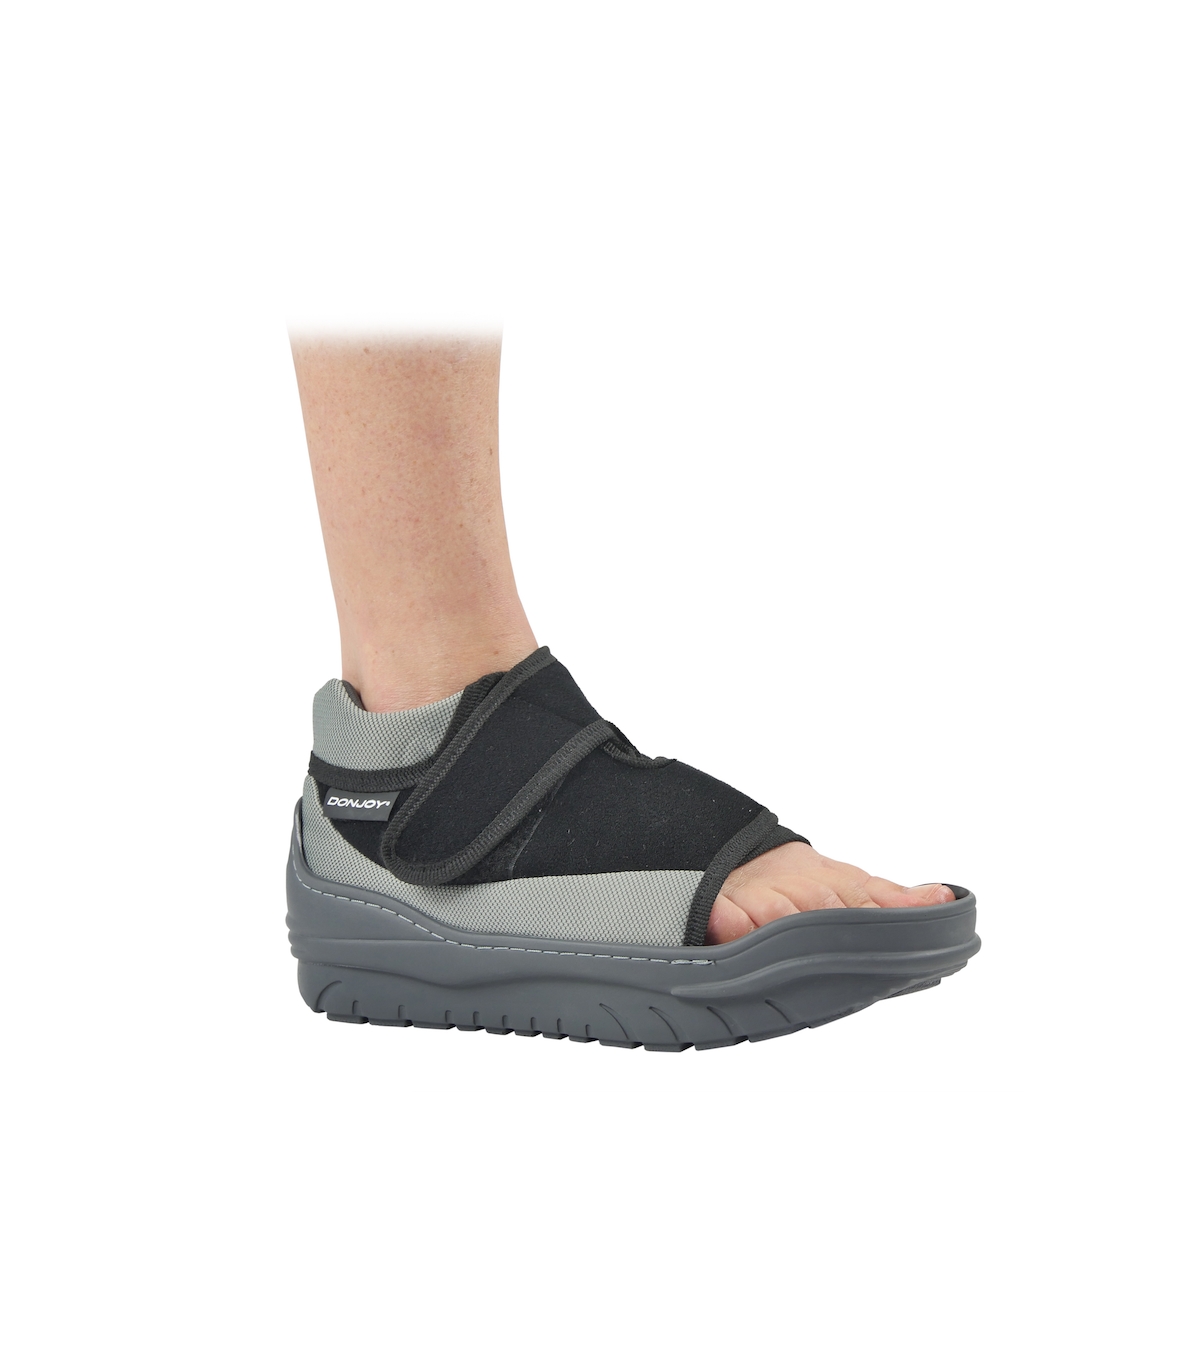 Chaussures orthopédiques - Domicile - Orthopédie